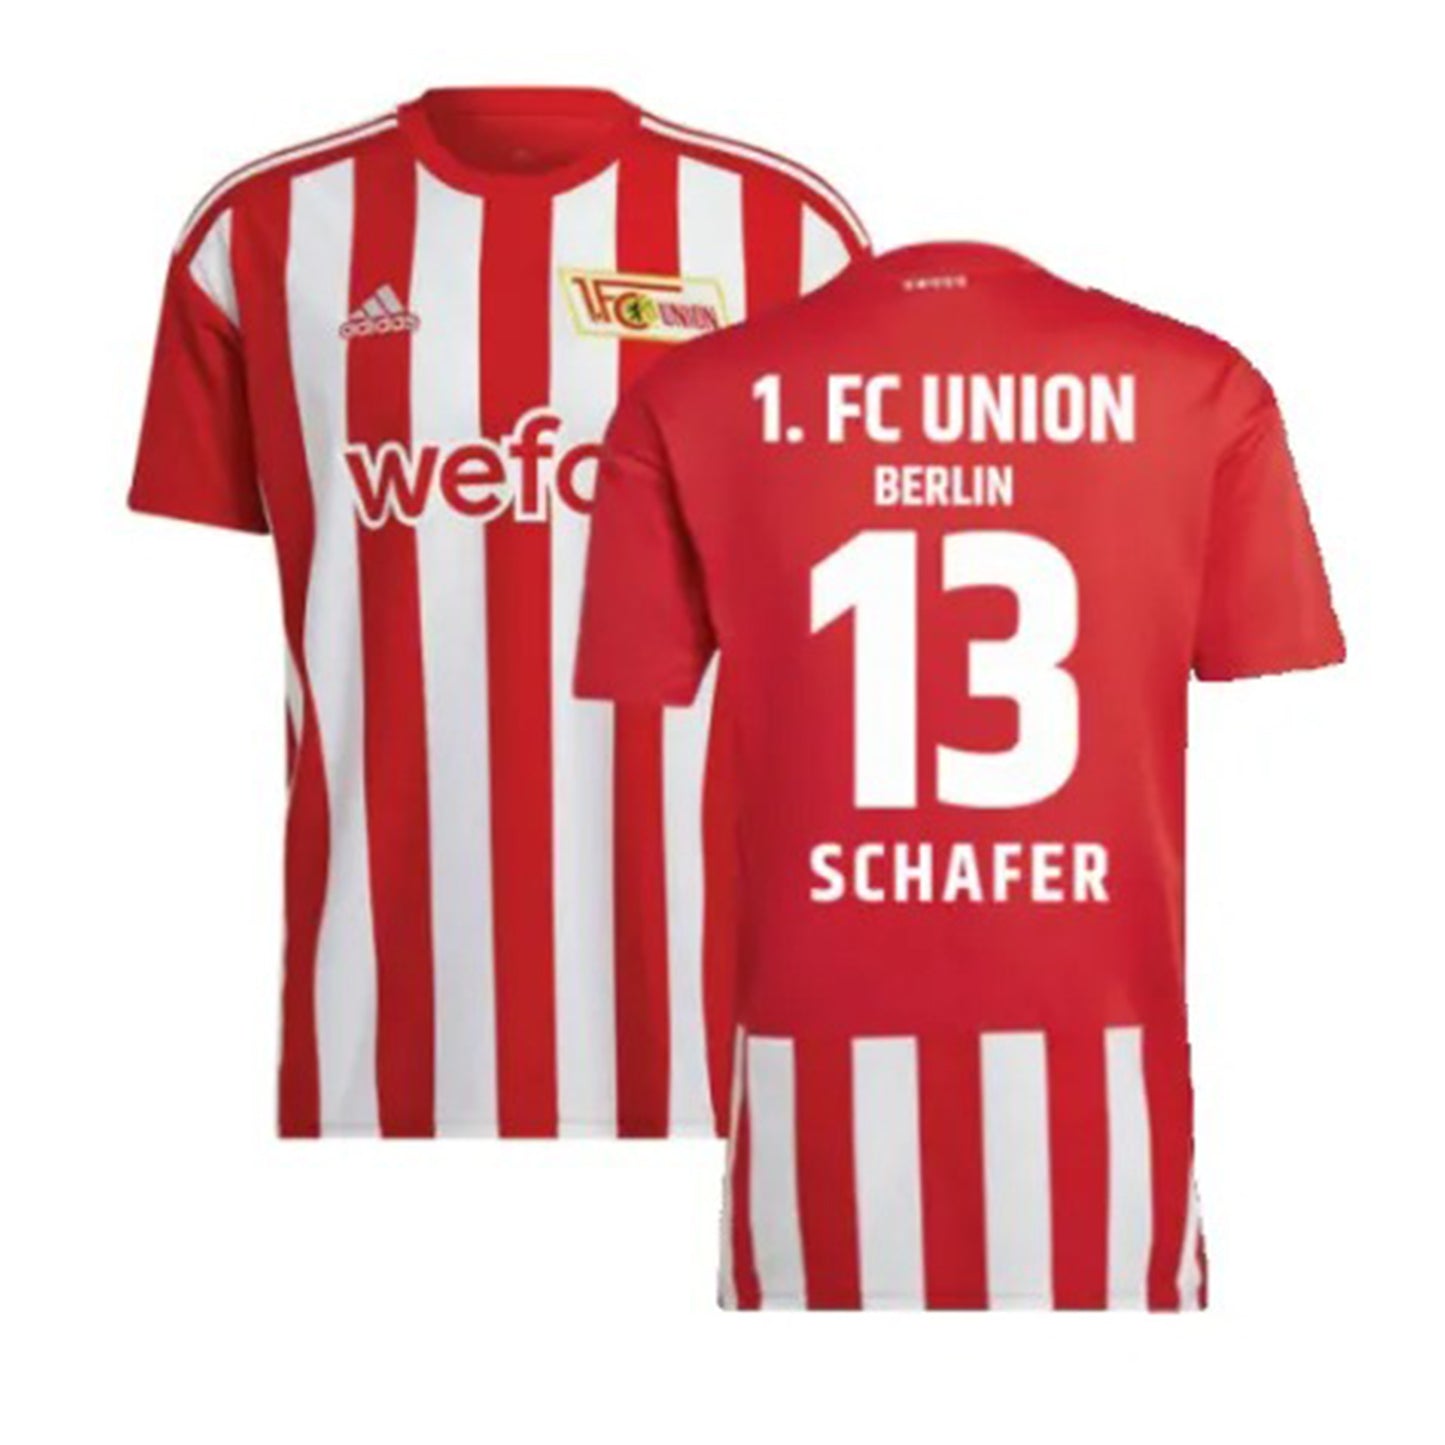 András Schäfer FC Union Berlin 13 Jersey